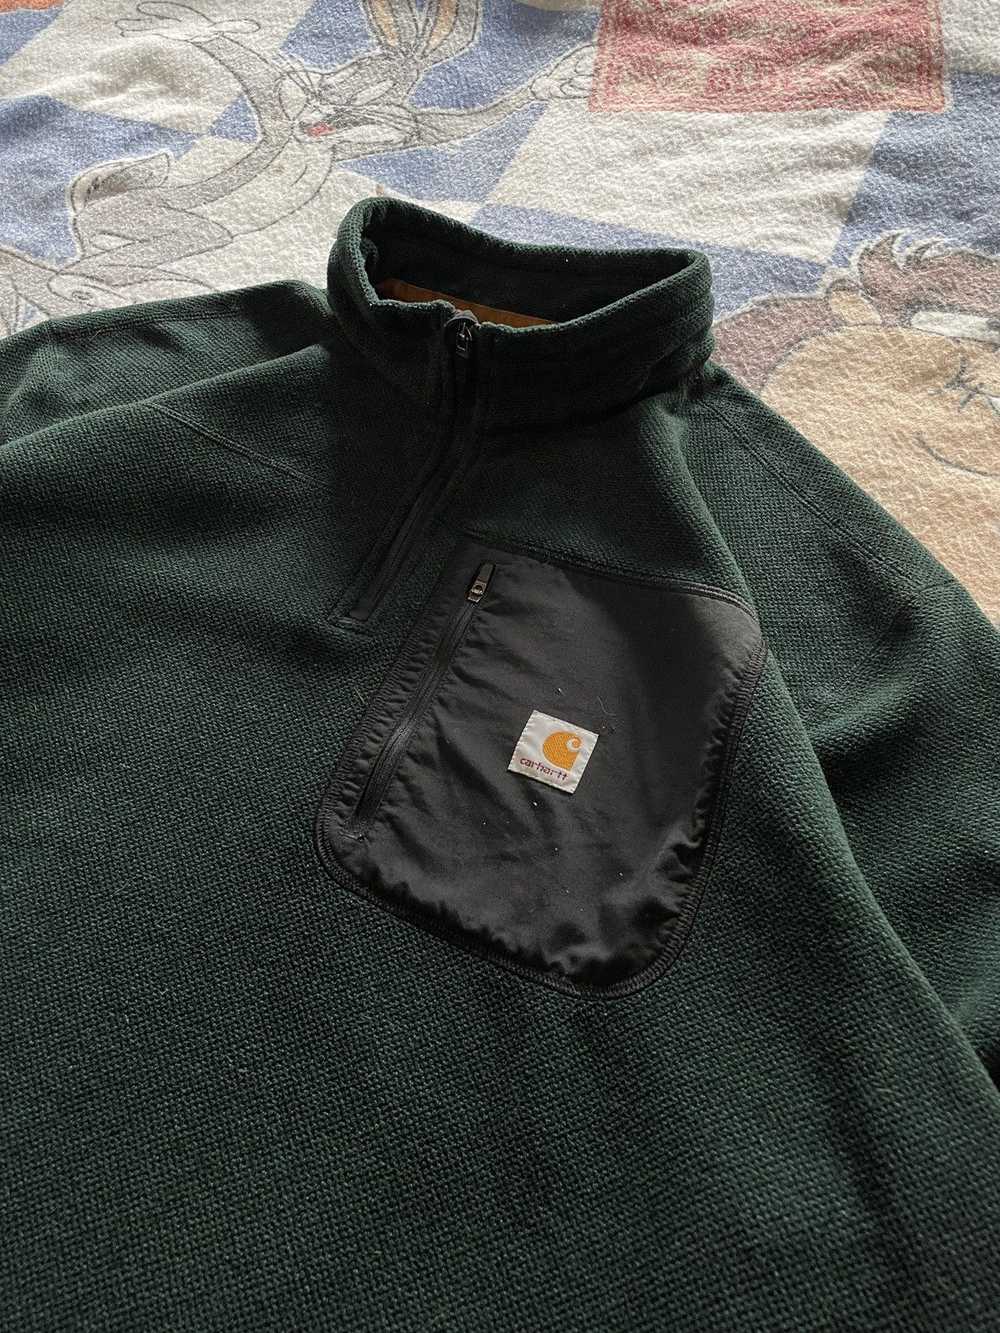 Carhartt Carhartt fleece pullover - image 2